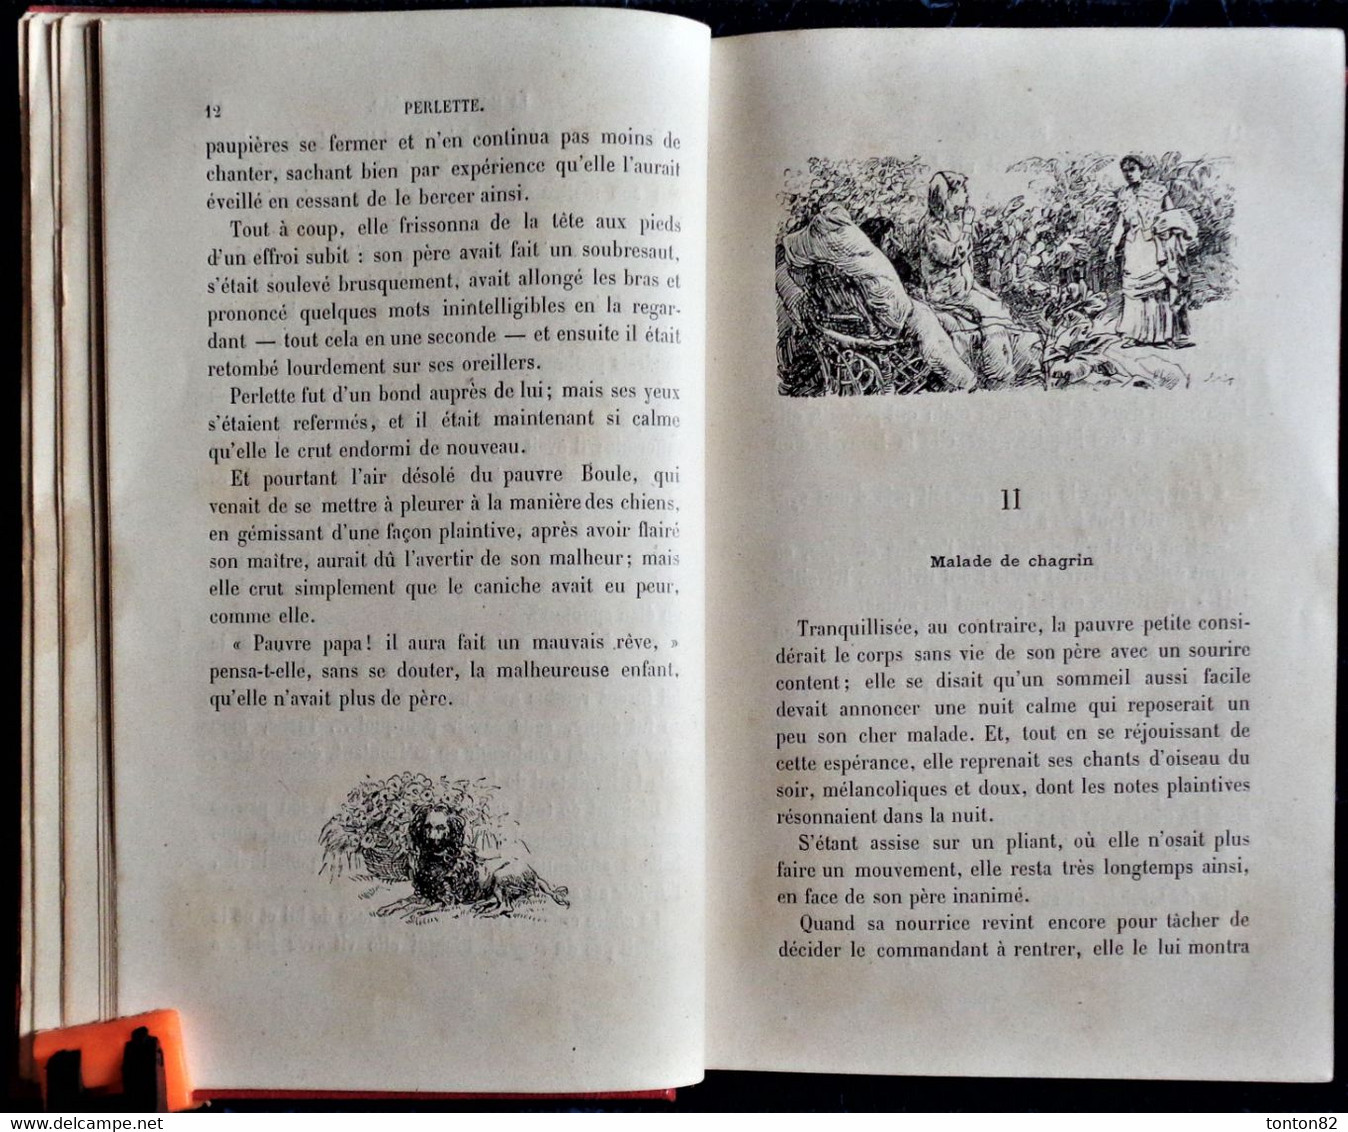 Mme Jeanne Cazin - PERLETTE - Bibliothèque Rose Illustrée - ( 1887 ). - Bibliotheque Rose